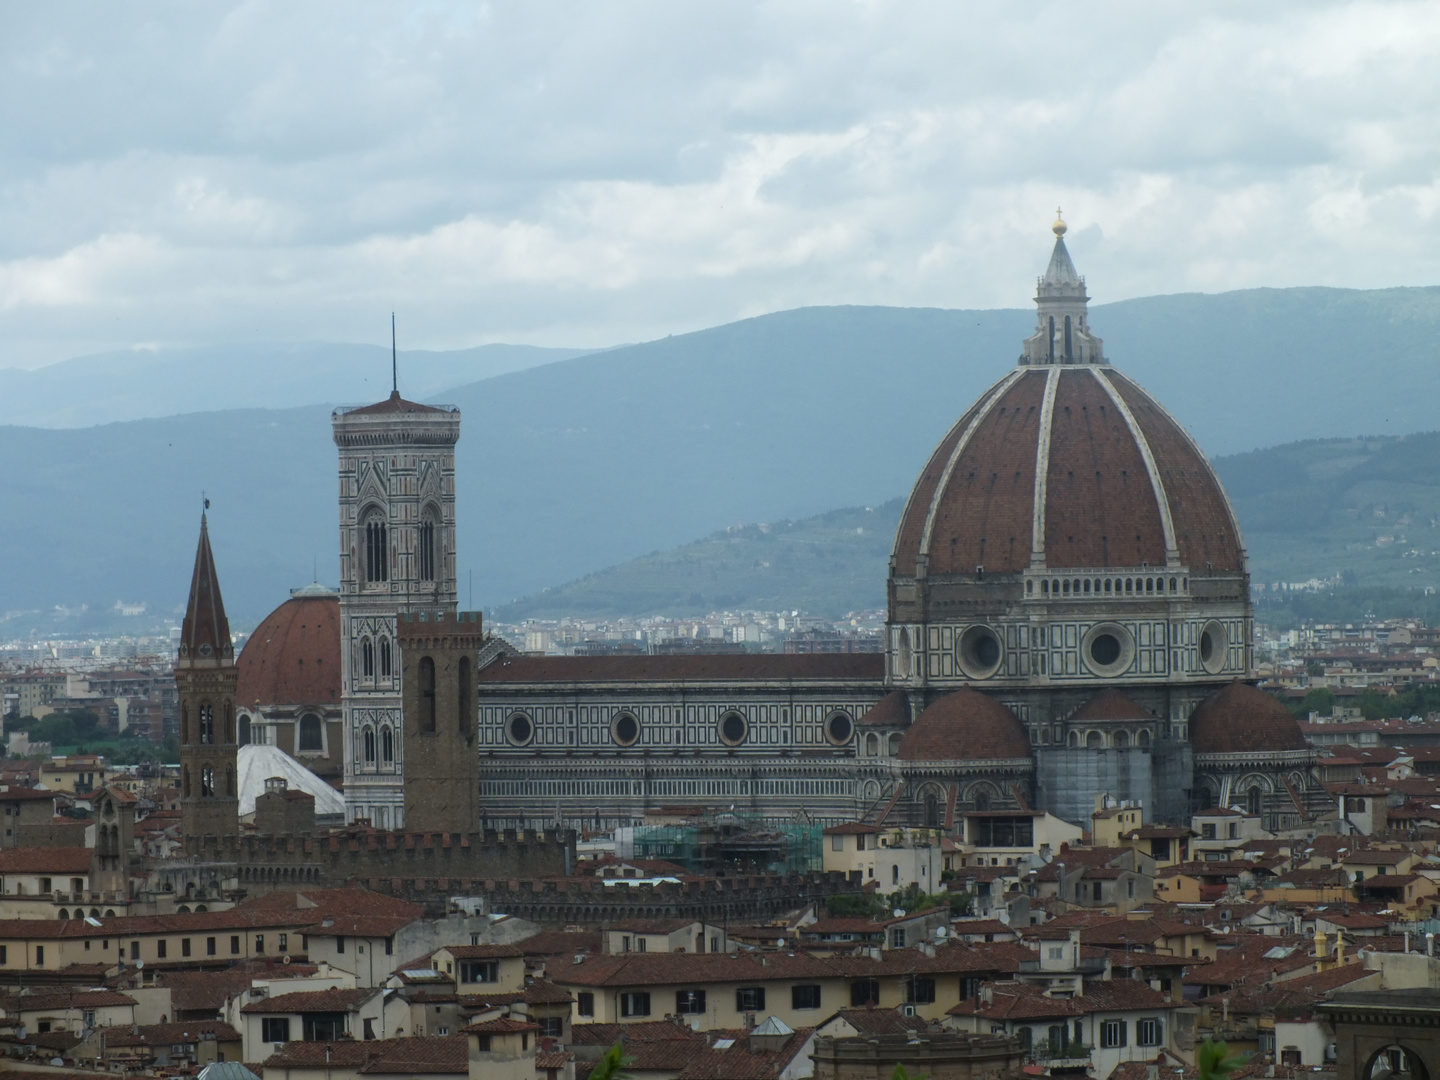 The Duomo!